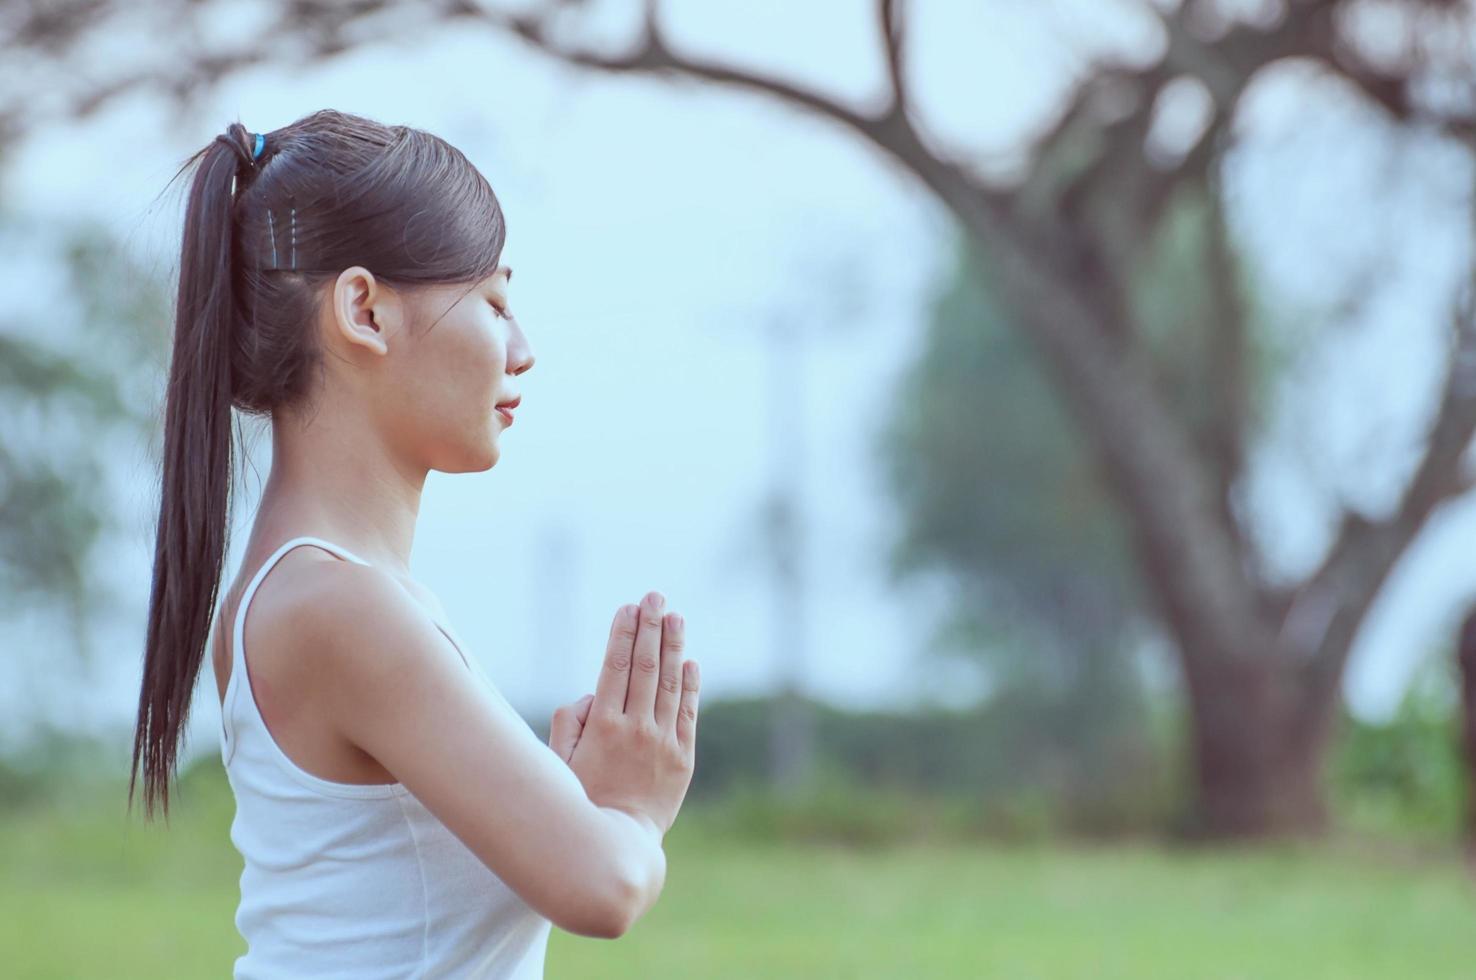 ung dam som gör yogaövningar i grönt fält utomhusområde som visar lugn fridfull i meditationssinnet - människor utövar yoga för meditation och träningskoncept foto